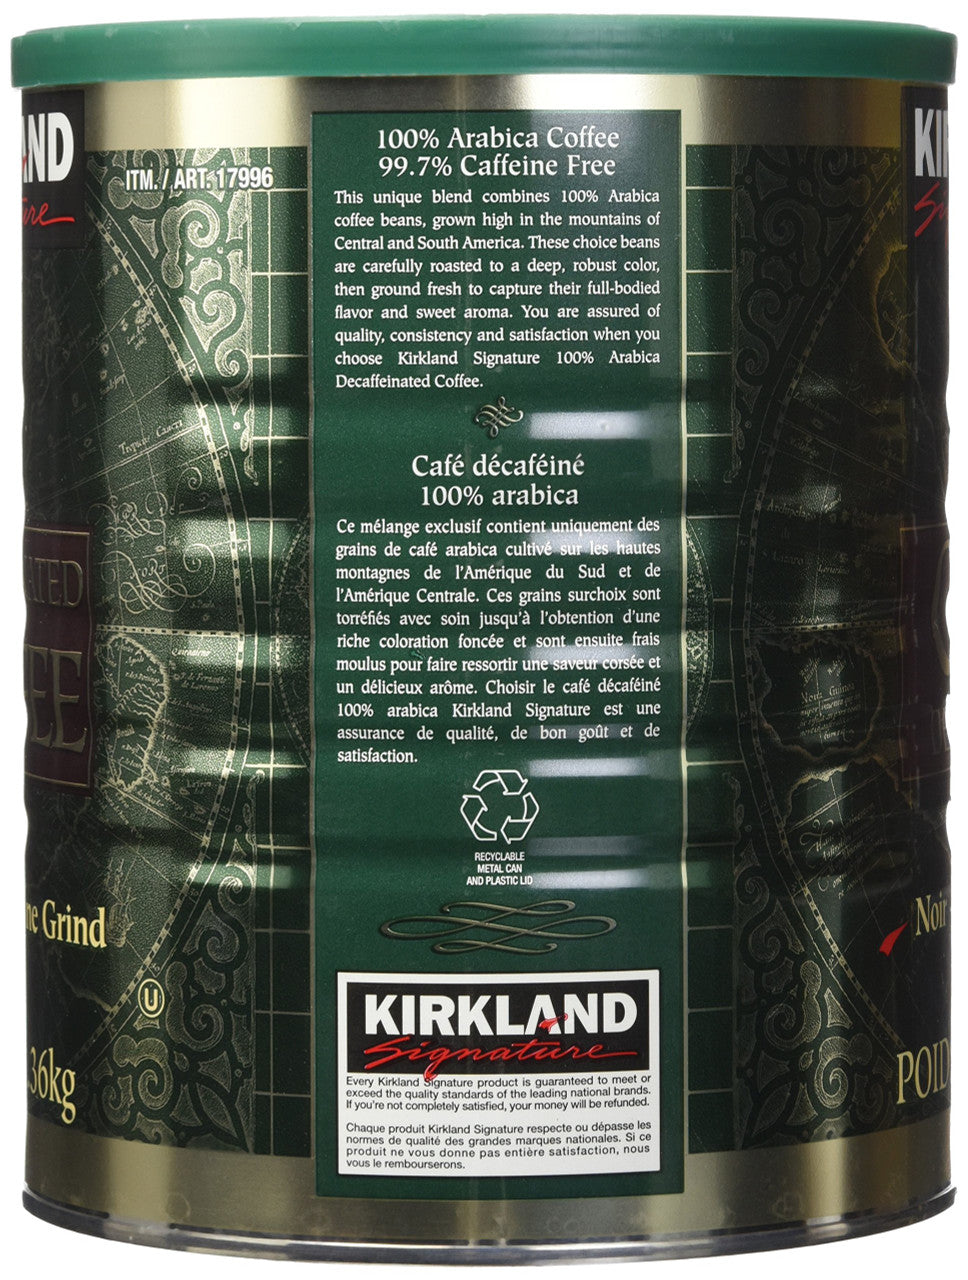 Kirkland Signature Ground Coffee, 1.36kg/3lbs, 100% Decaffeinated